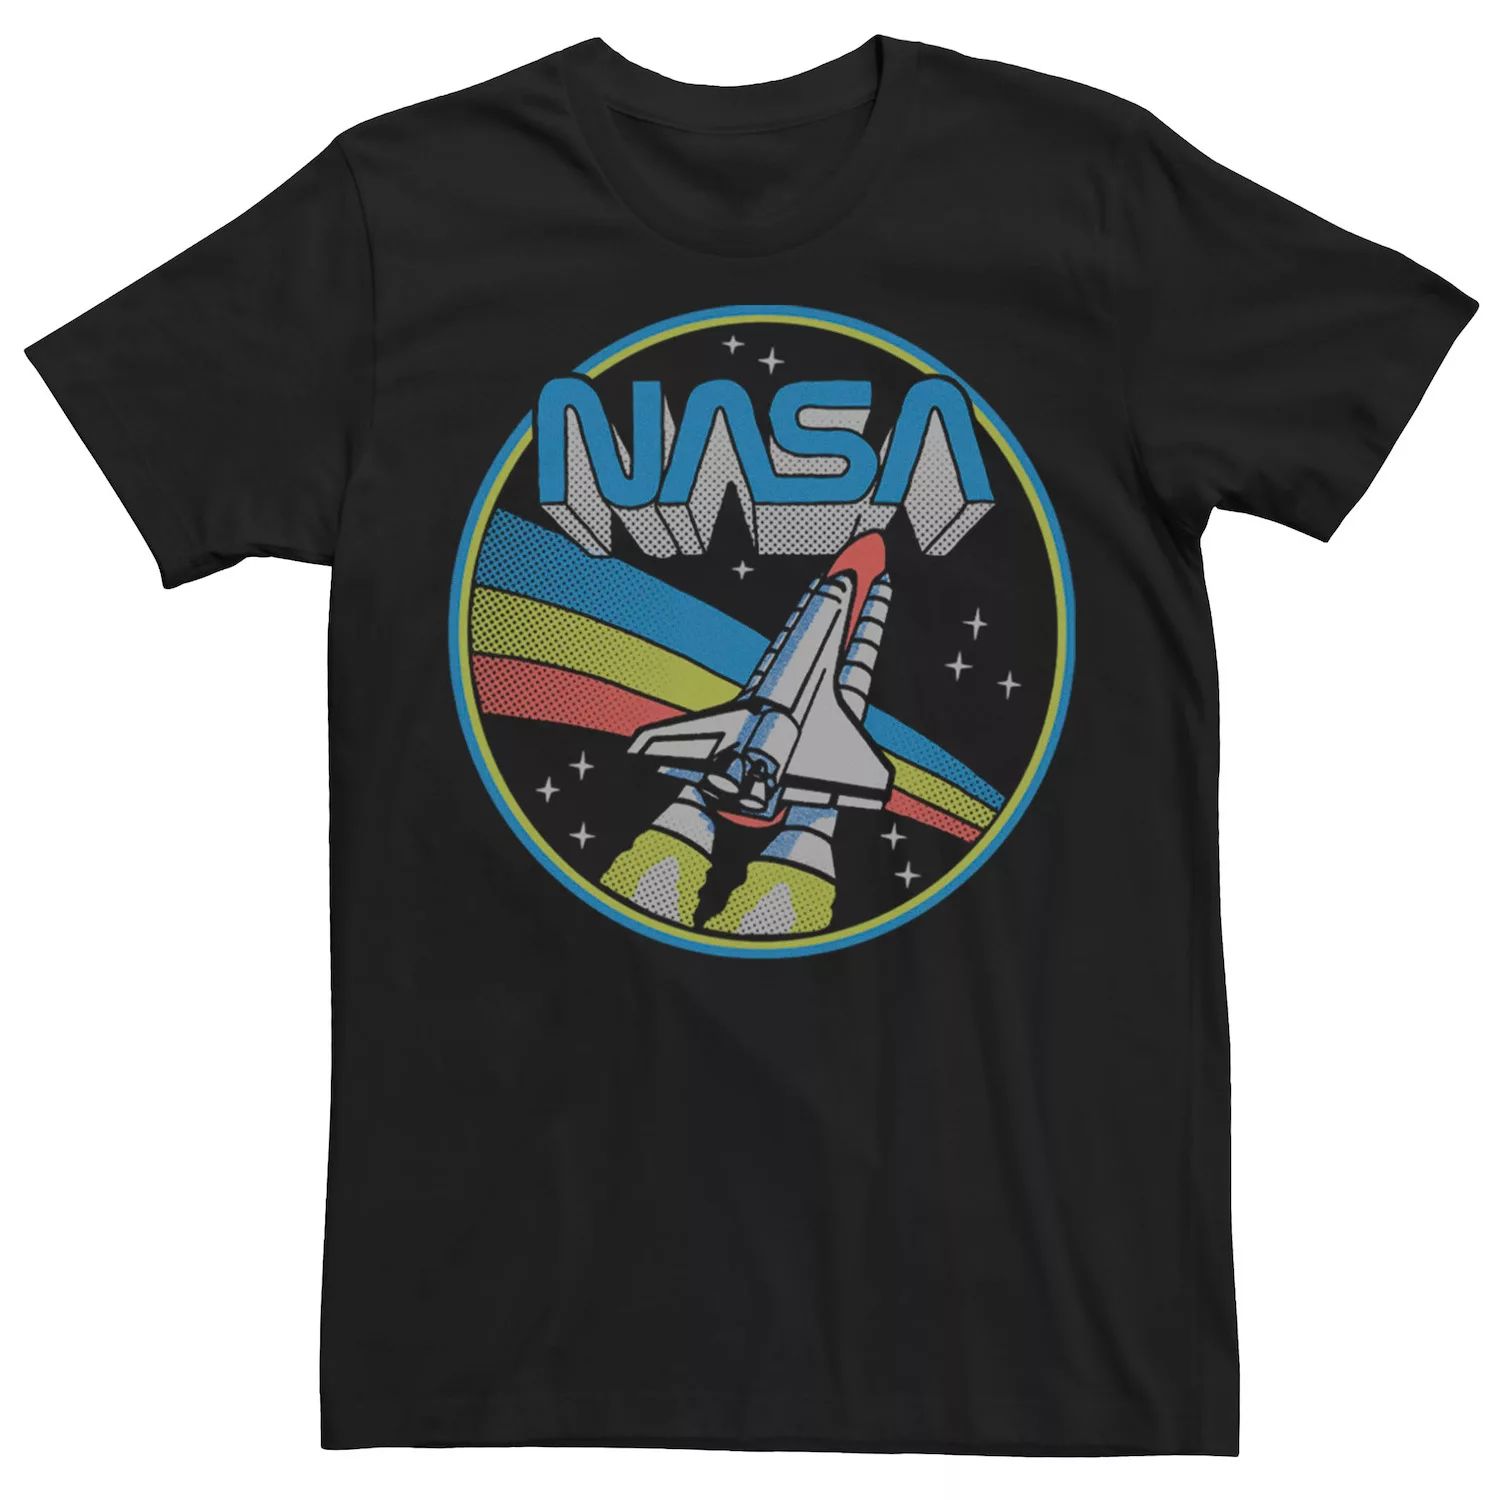 Мужская футболка с логотипом NASA в стиле ретро в стиле поп-круг Licensed Character